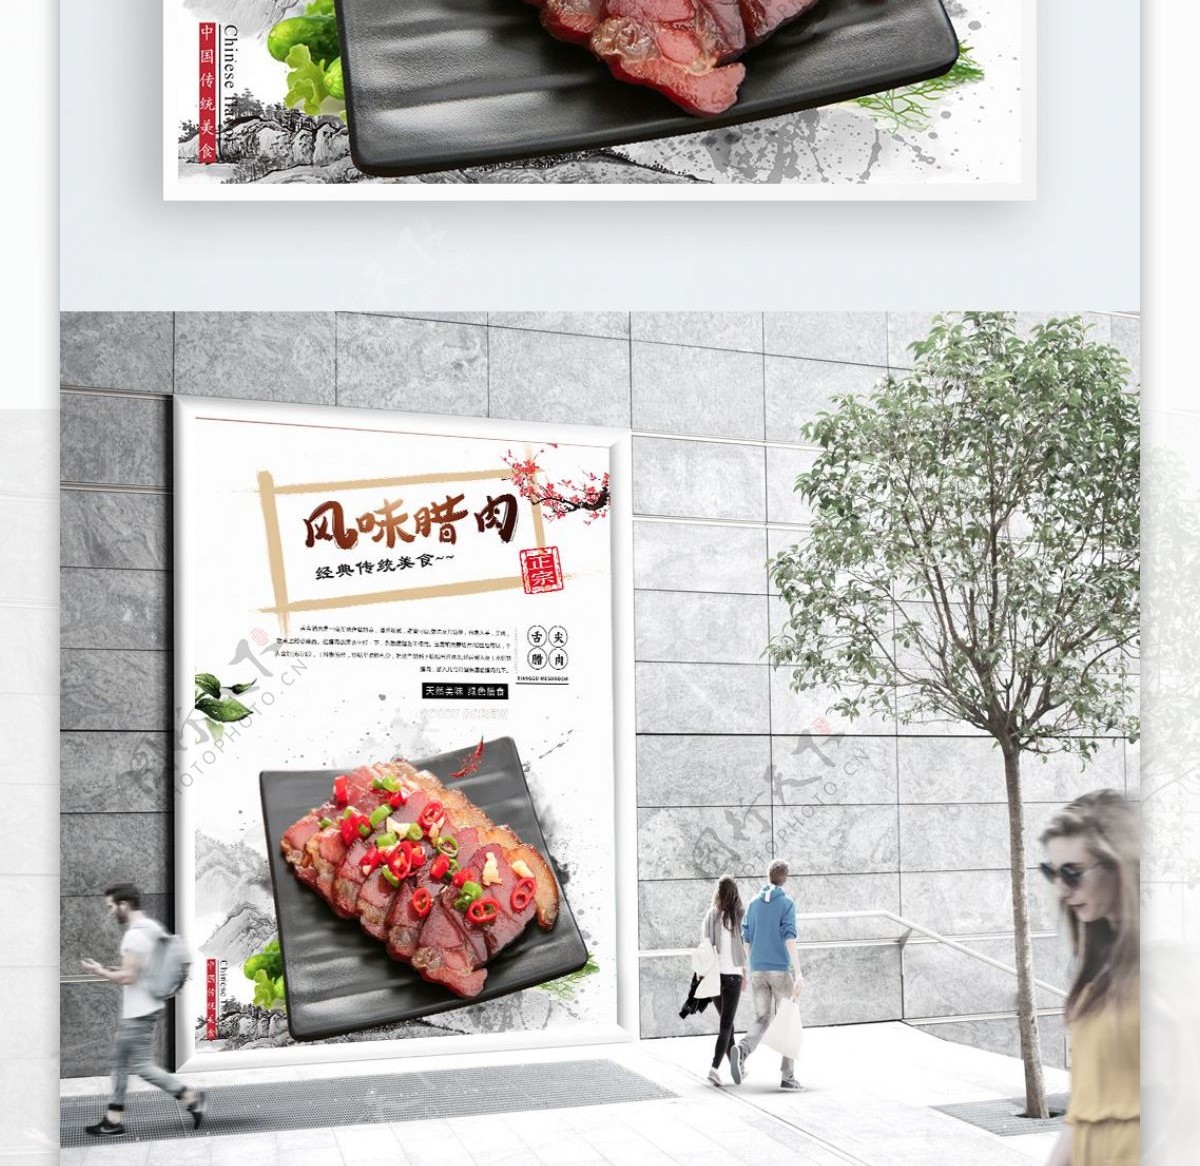 中国风复古美食腊肉海报设计